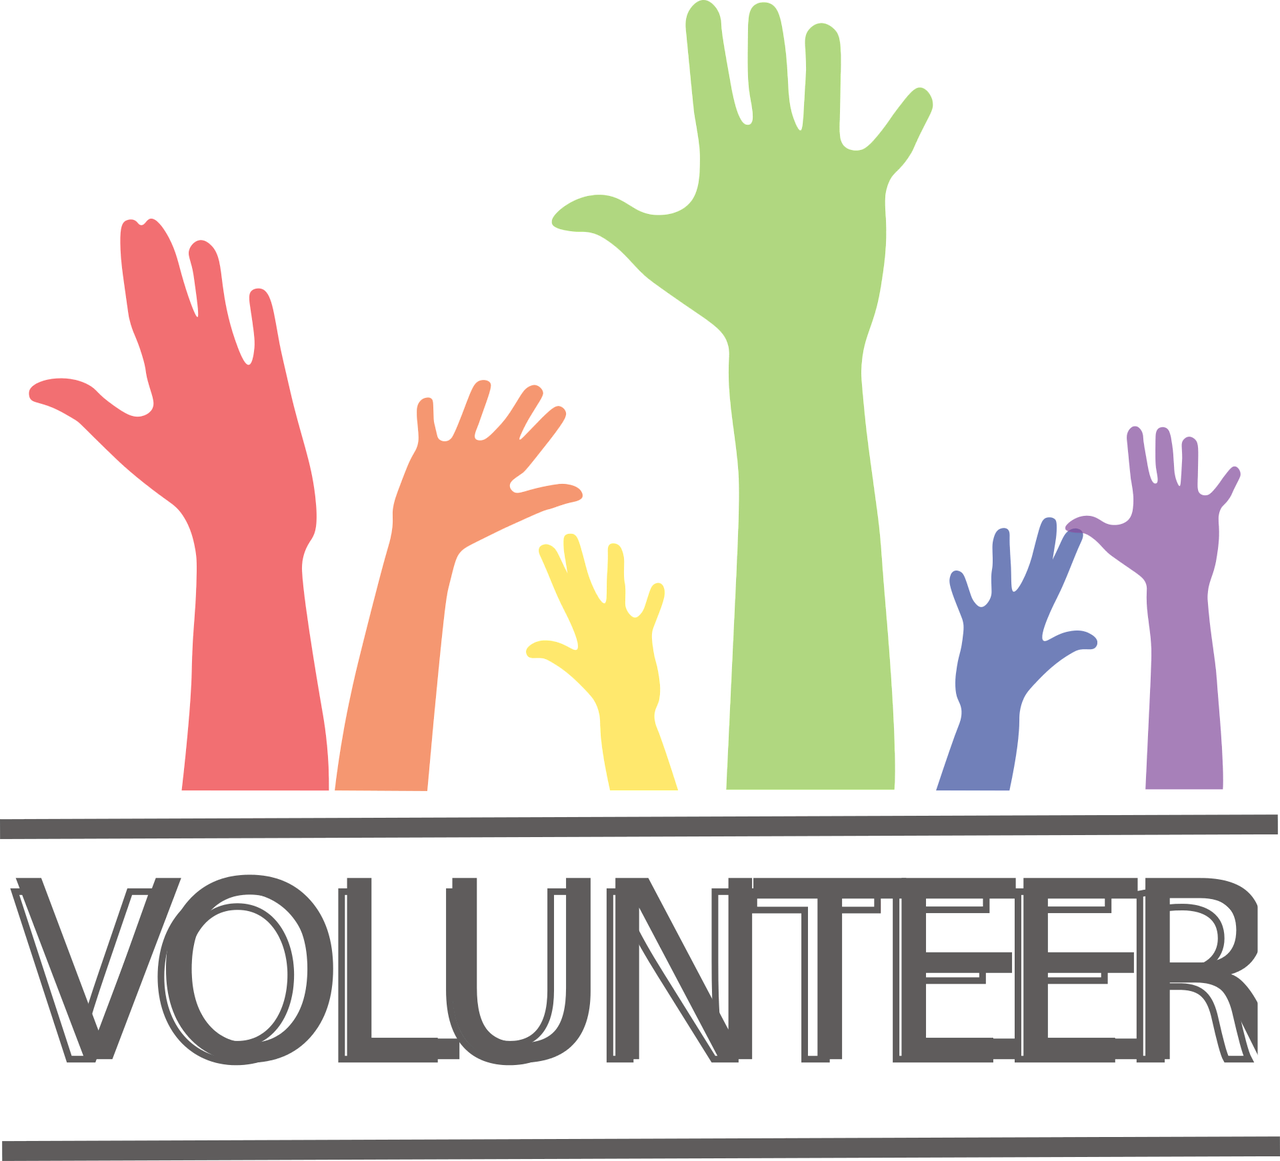 Redes de voluntarios (manejar información de terceros)